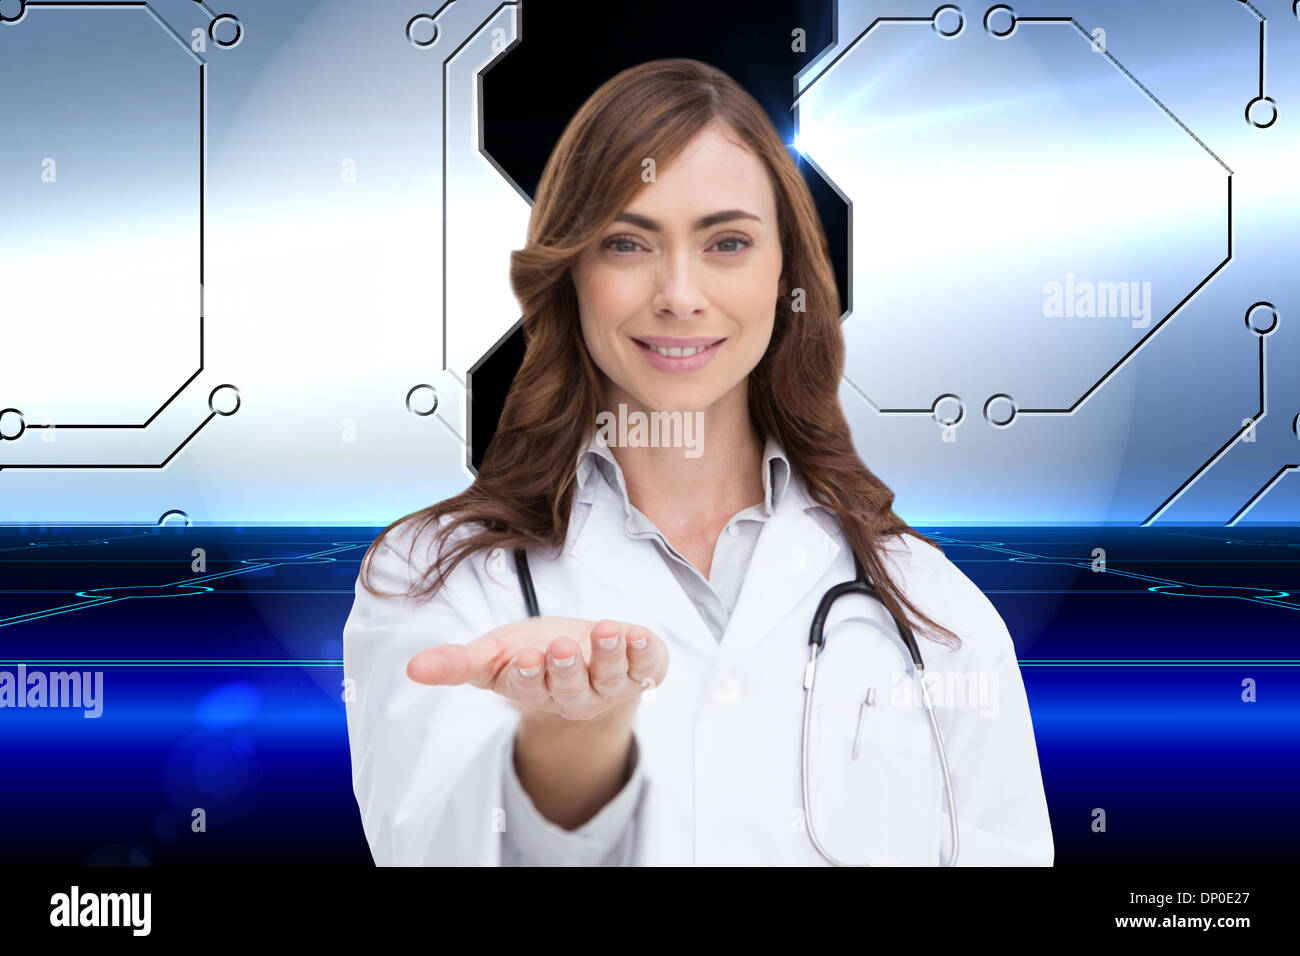 Immagine composita del ritratto femminile di infermiere tenendo fuori aprire palm Foto Stock